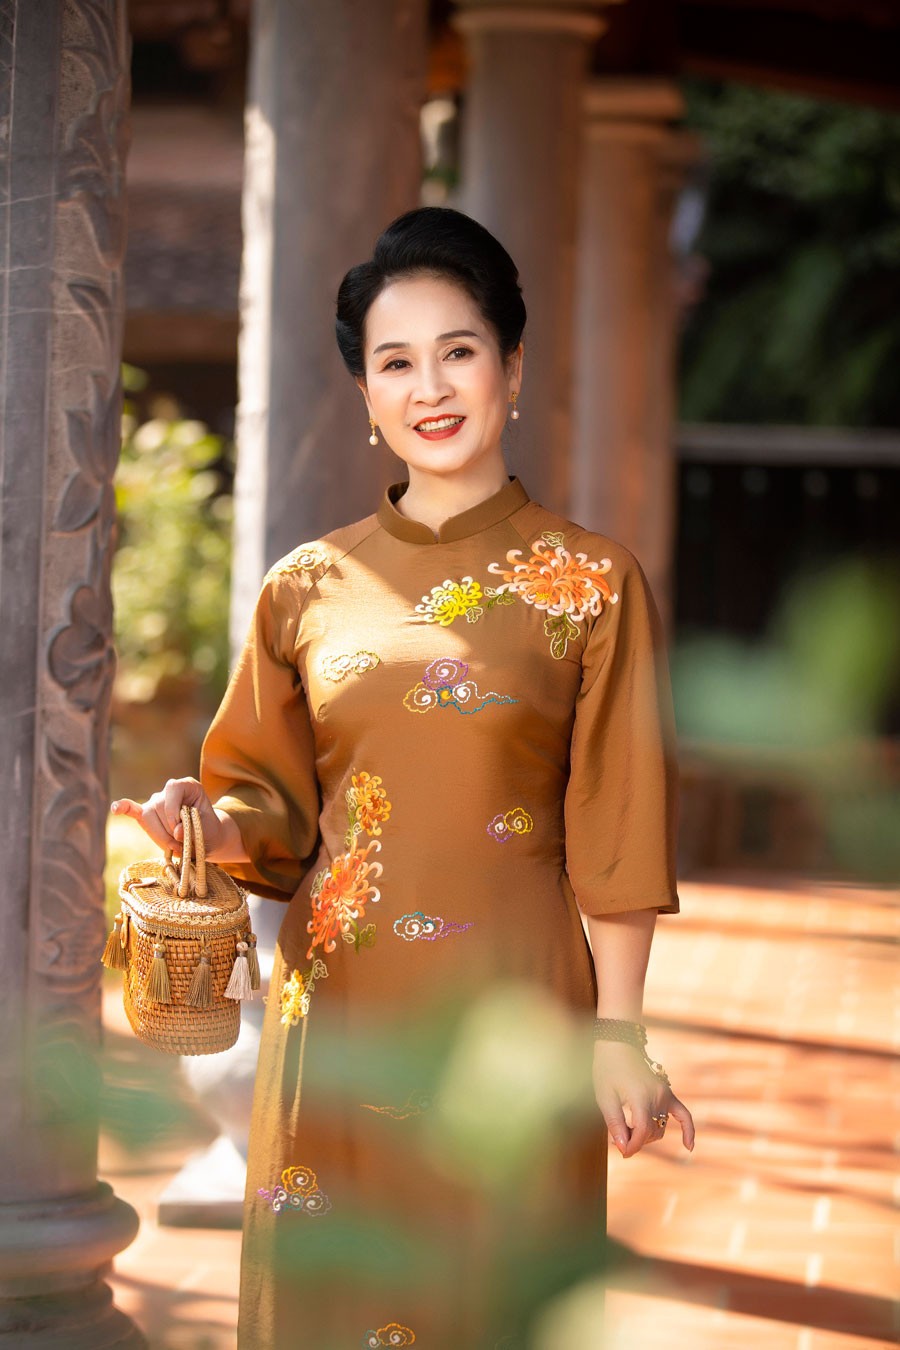 Dung nhan trẻ đẹp của NSND Lan Hương và NSƯT Chiều Xuân trong trang phục truyền thống đi lễ chùa